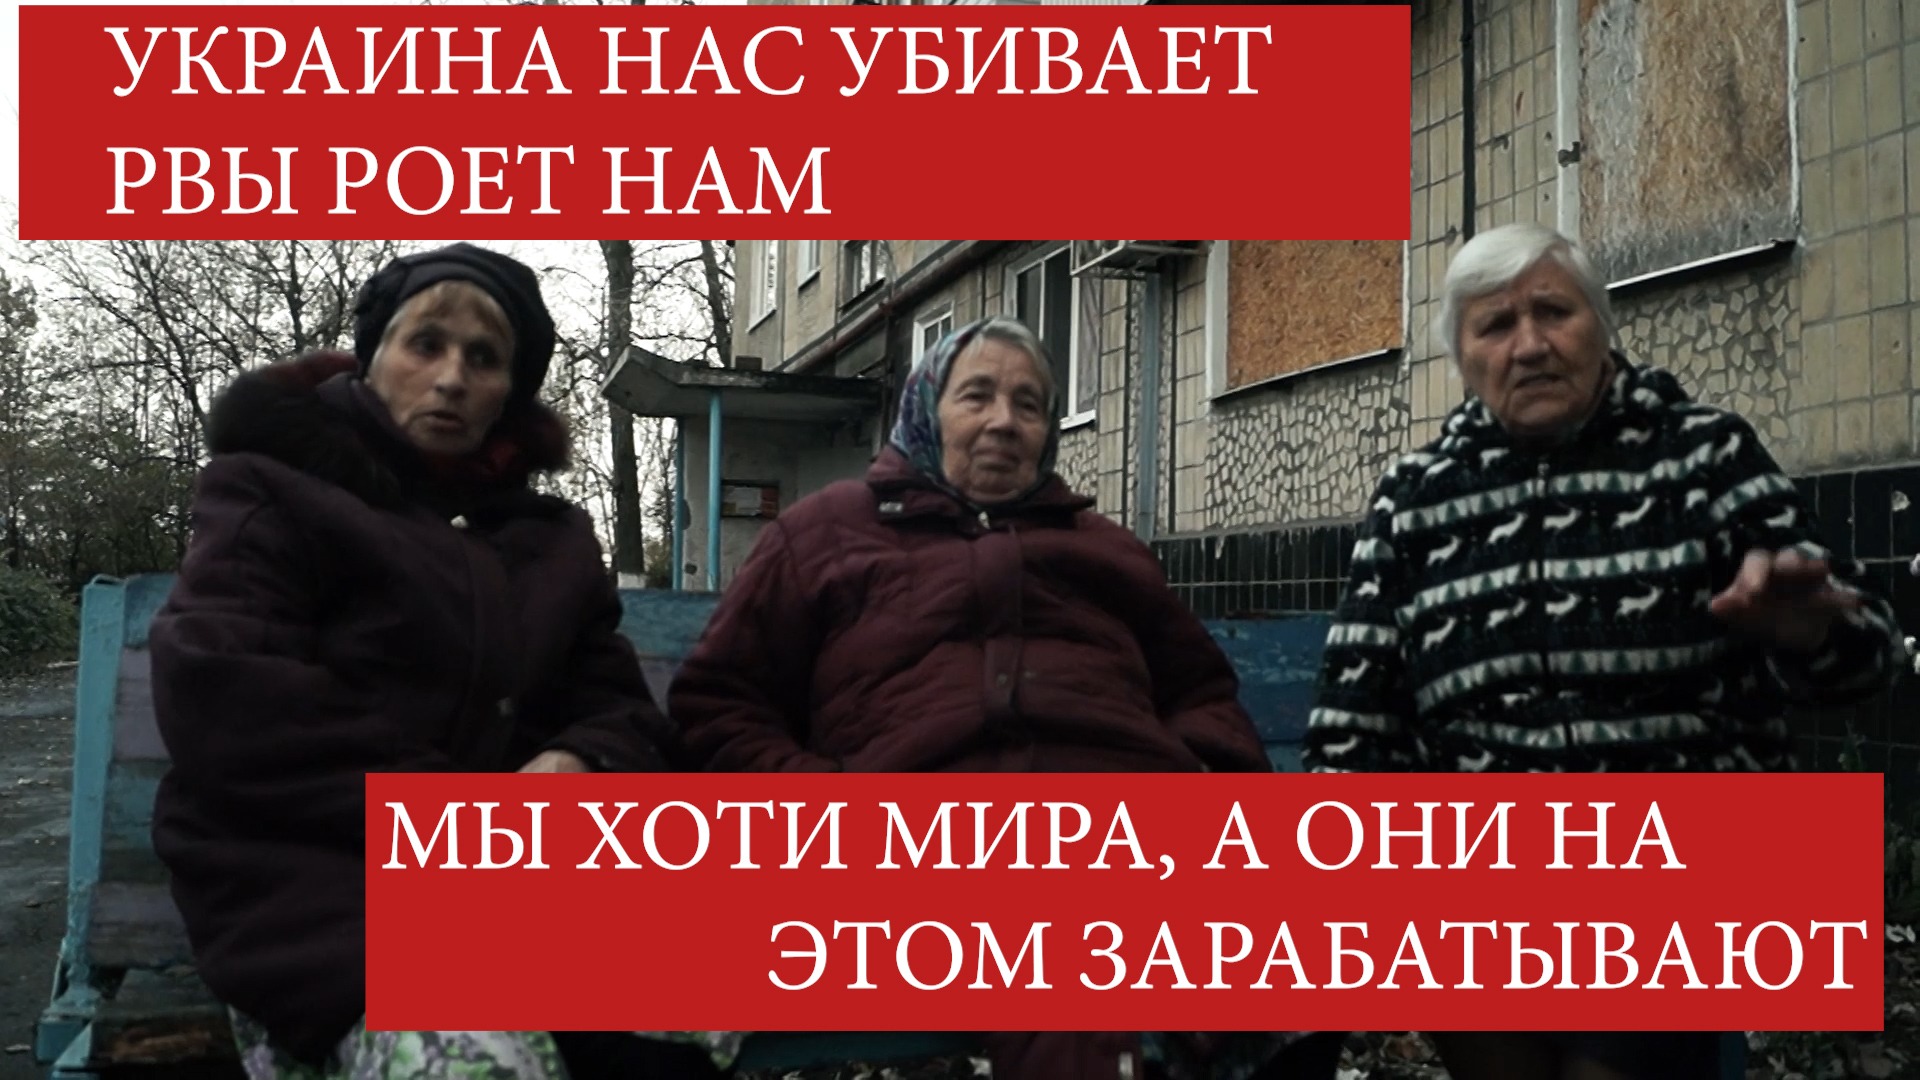 "Мы хотим мира, а националисты зарабатывают на этом", - жители Донбасса